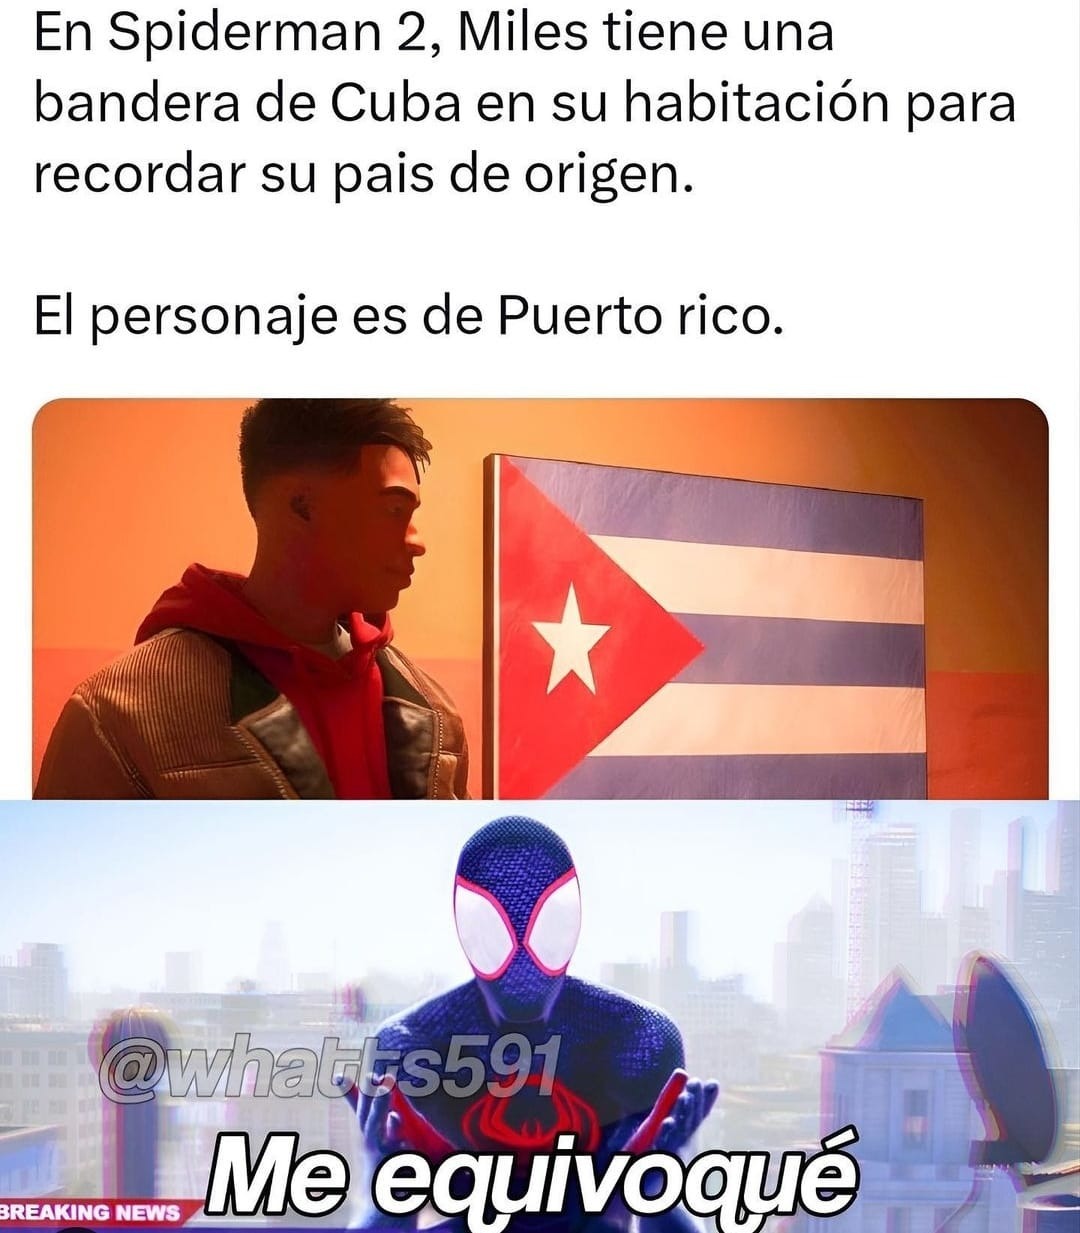 Pusieron la bandera de Cuba en vez de la de Puerto RIco en el Spiderman 2 - meme